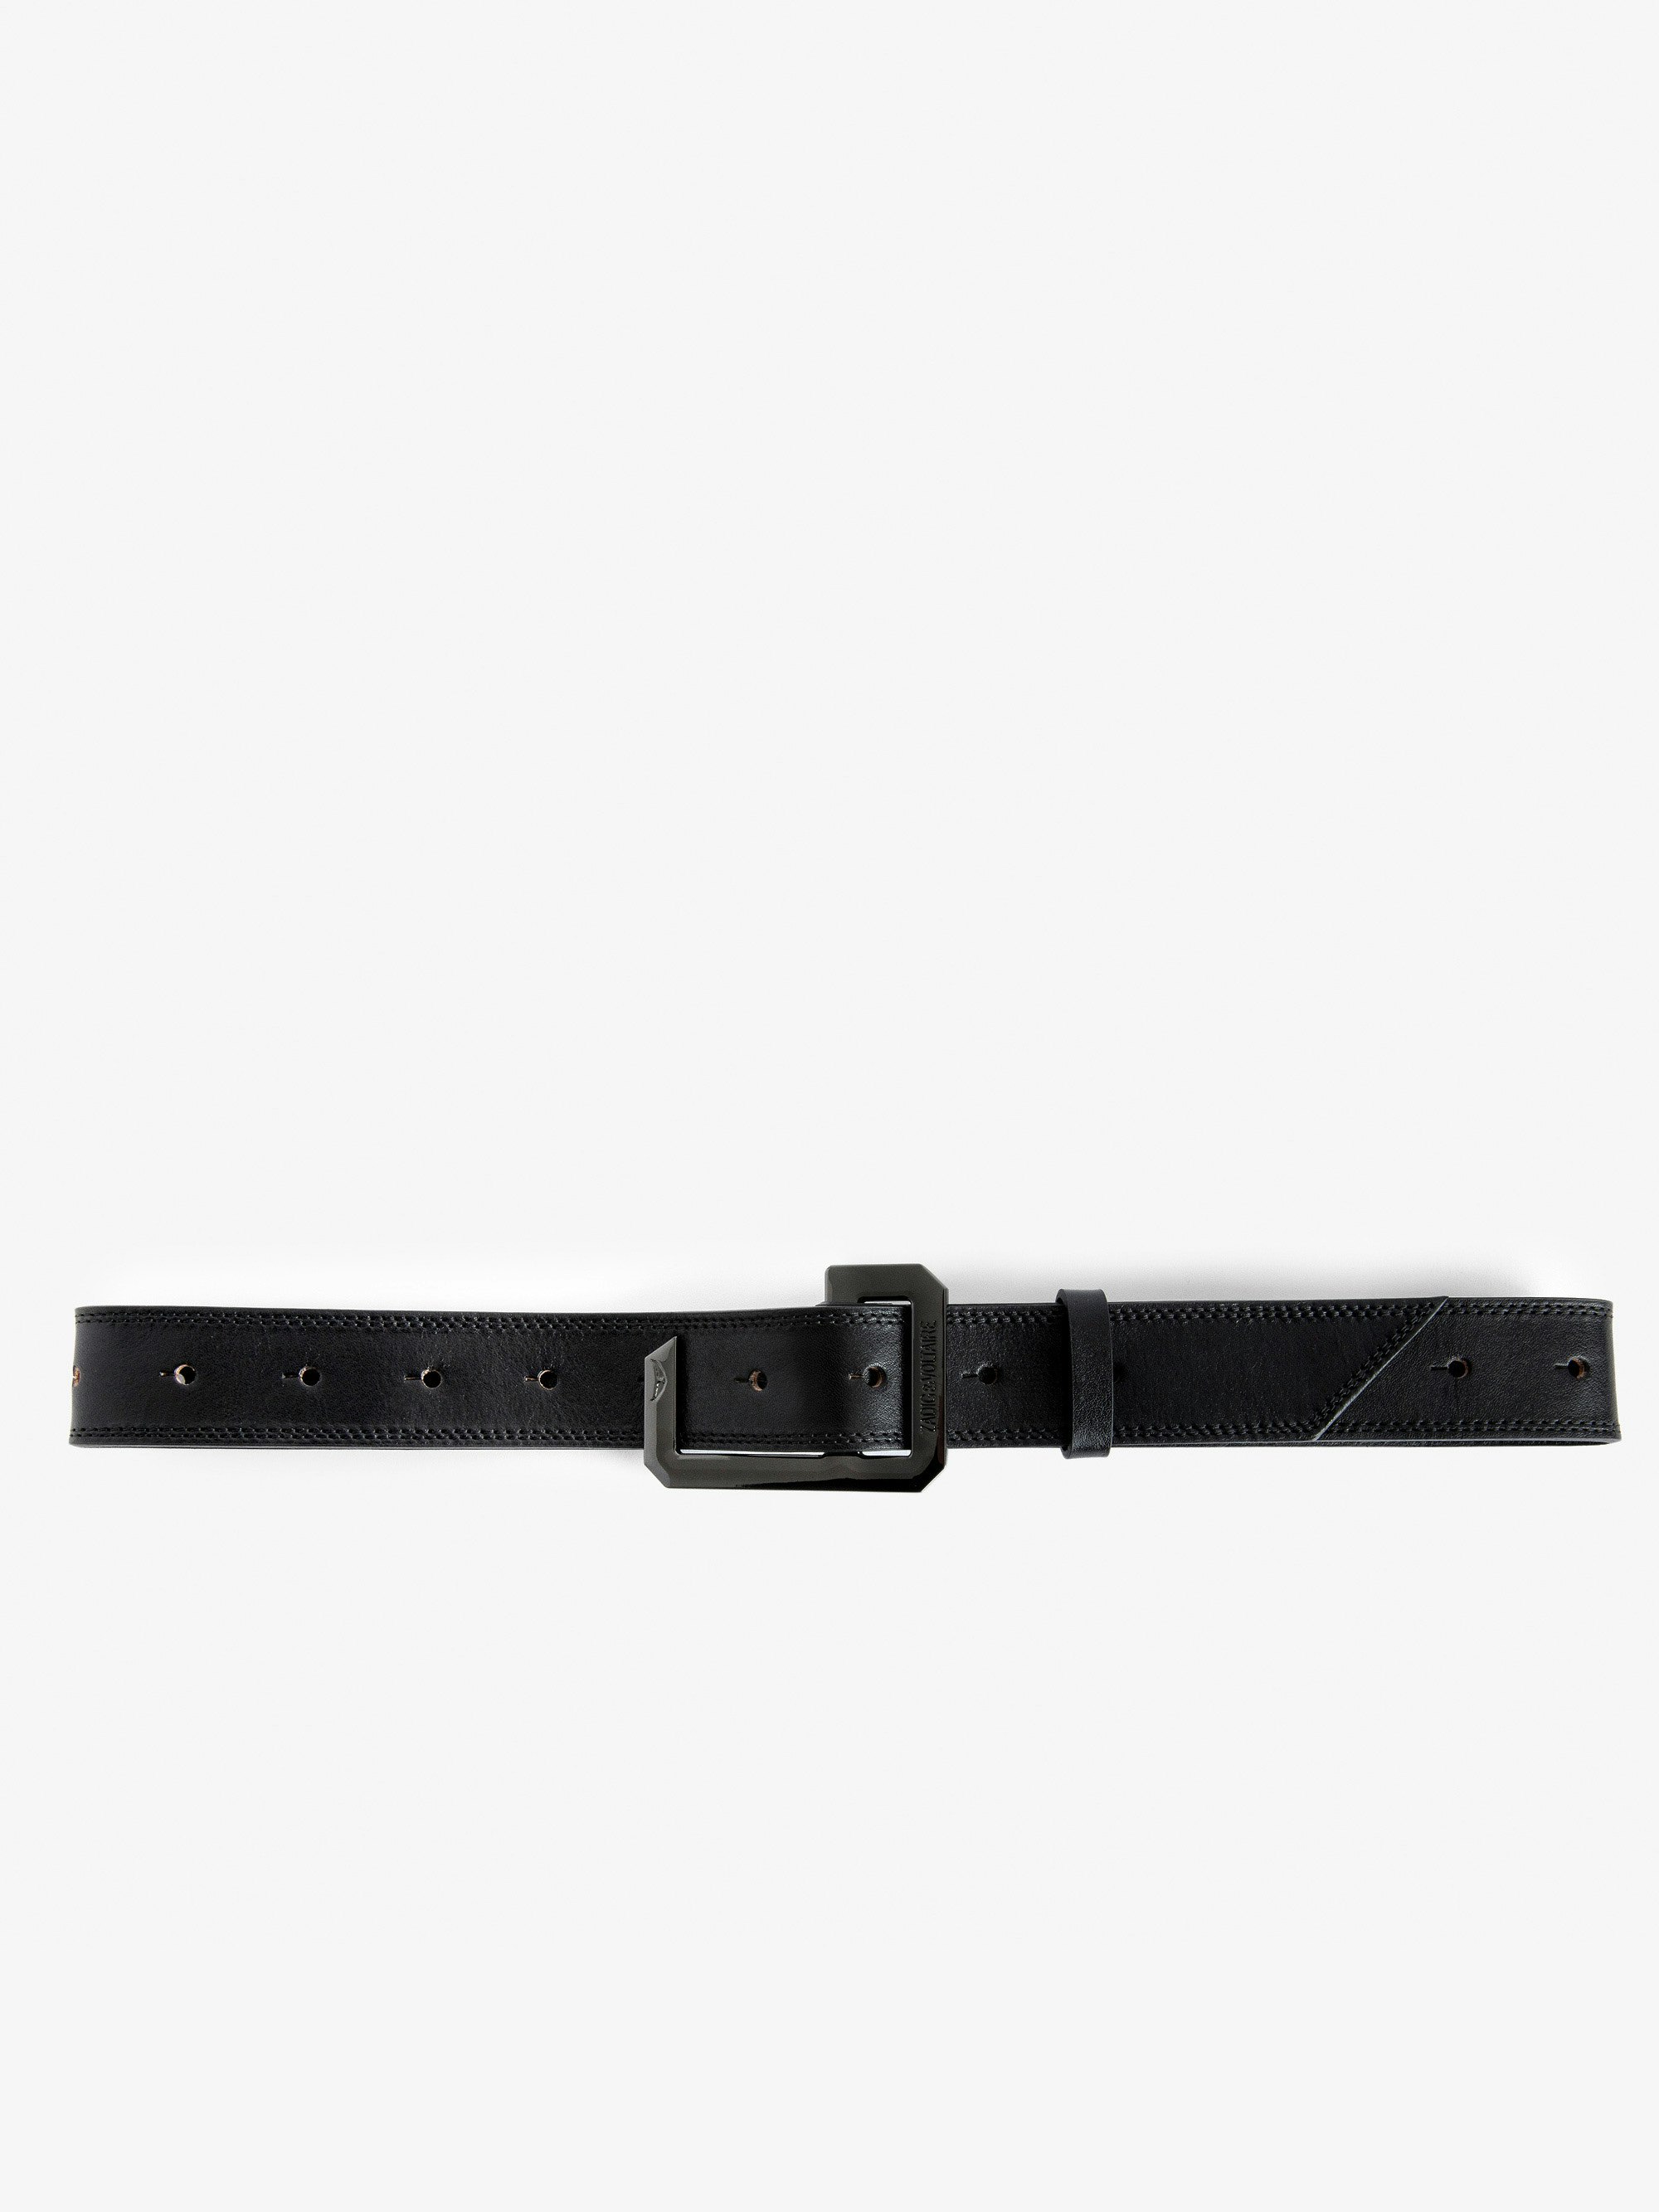 La Cecilia Belt - Adjustable black vegetable-tanned leather belt with C buckle.